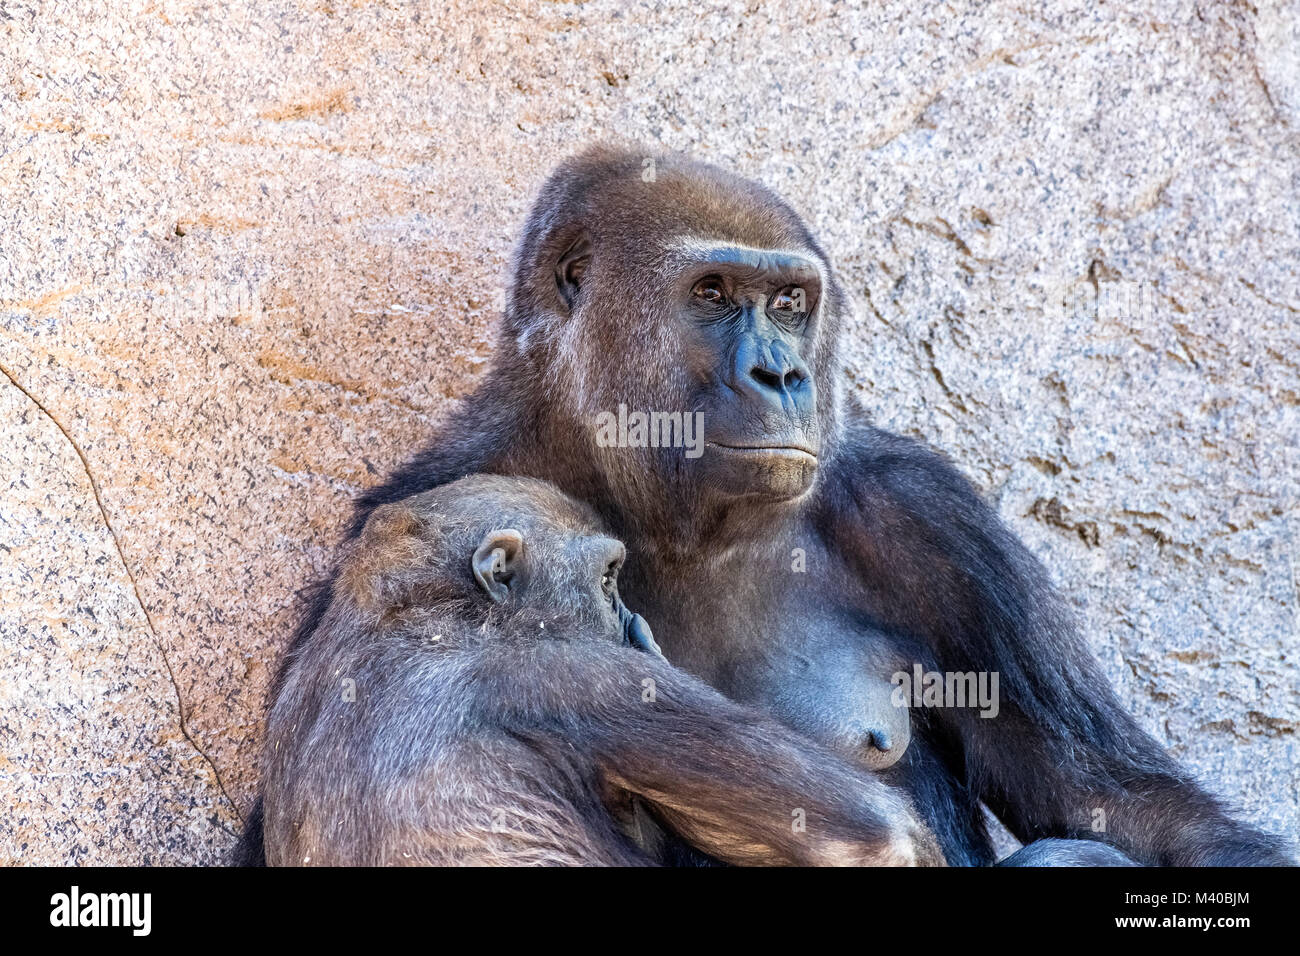 Una hembra de gorila silverback con su joven descendencia muestra el vínculo entre la madre y el bebé. Foto de stock